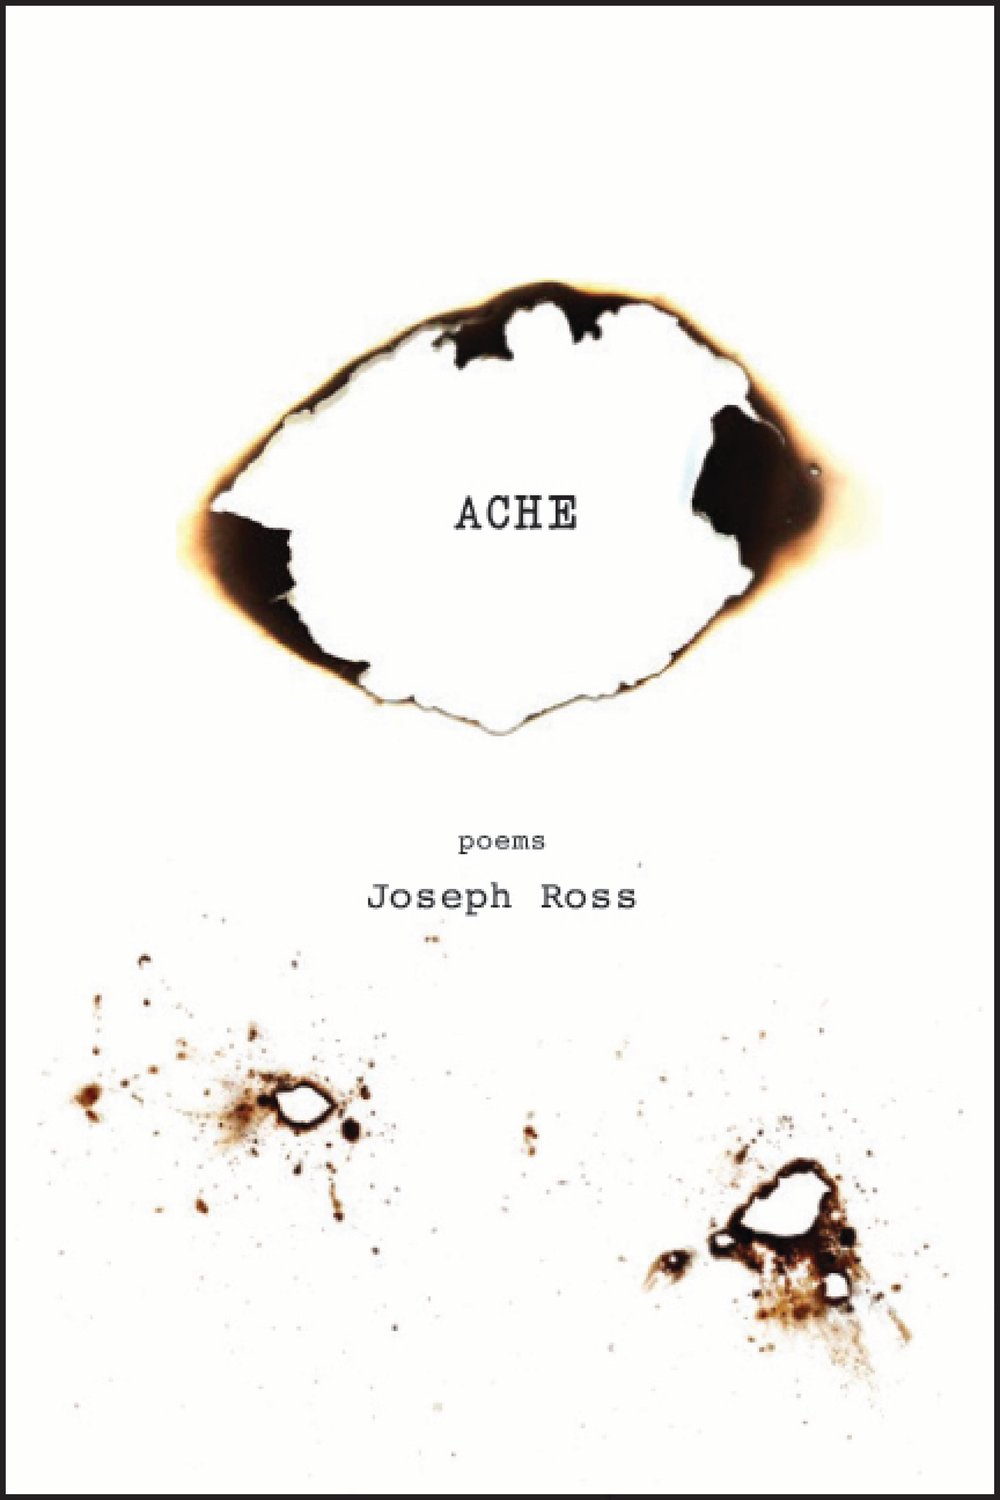 Ache by Joseph Ross